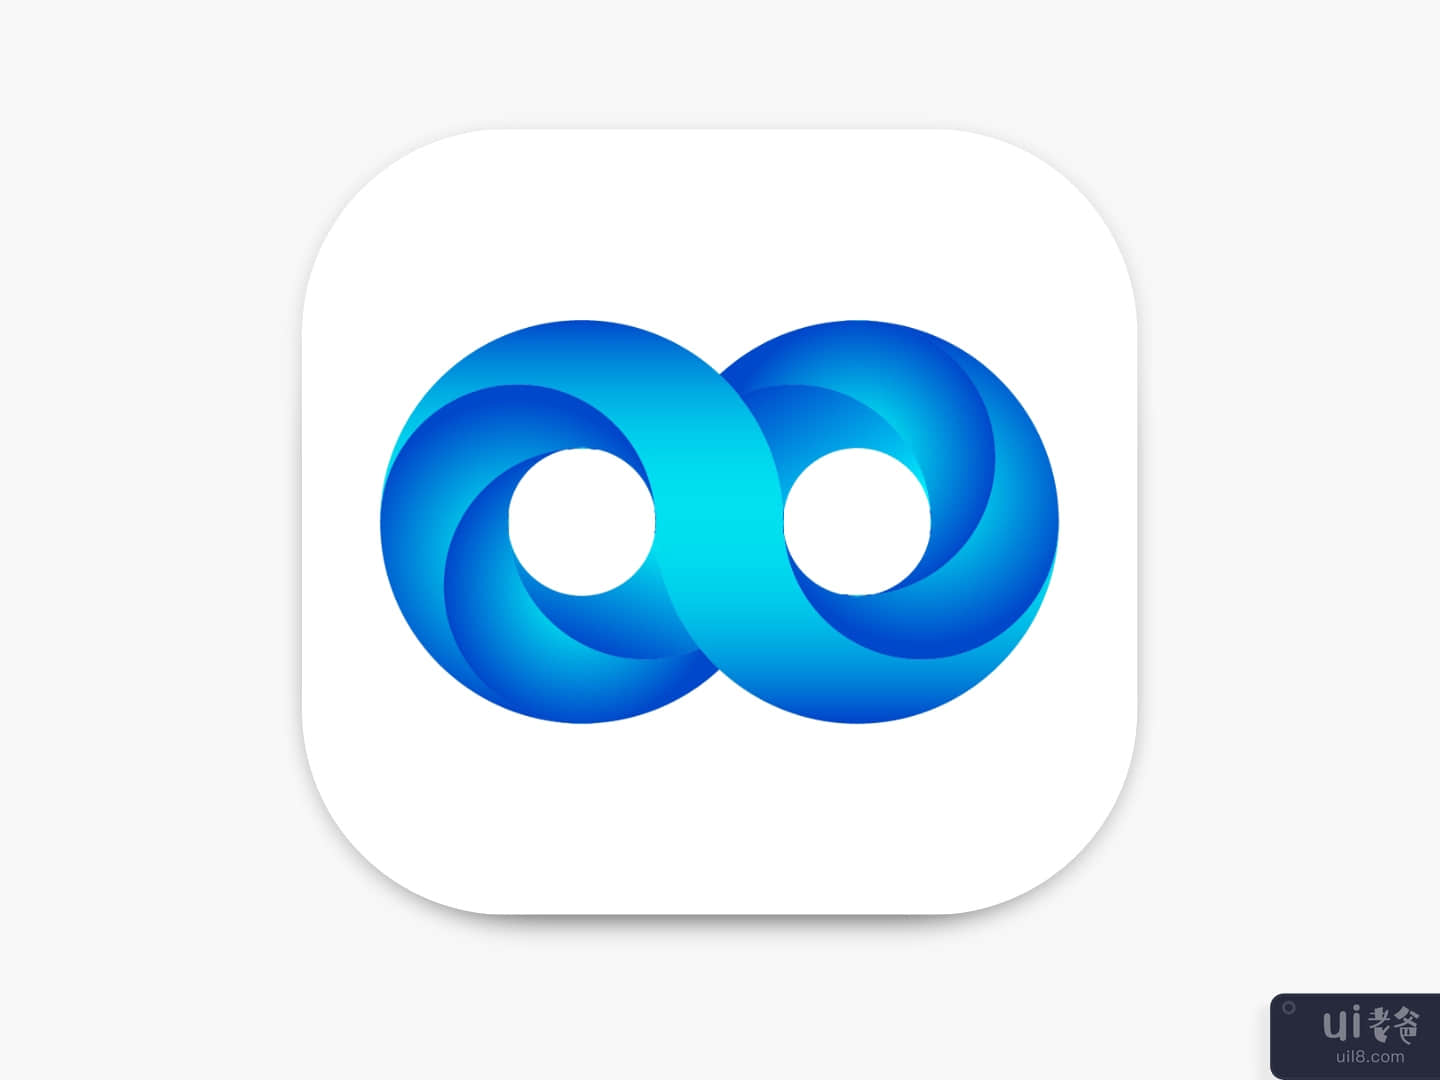 DailyUI #005: App Icon